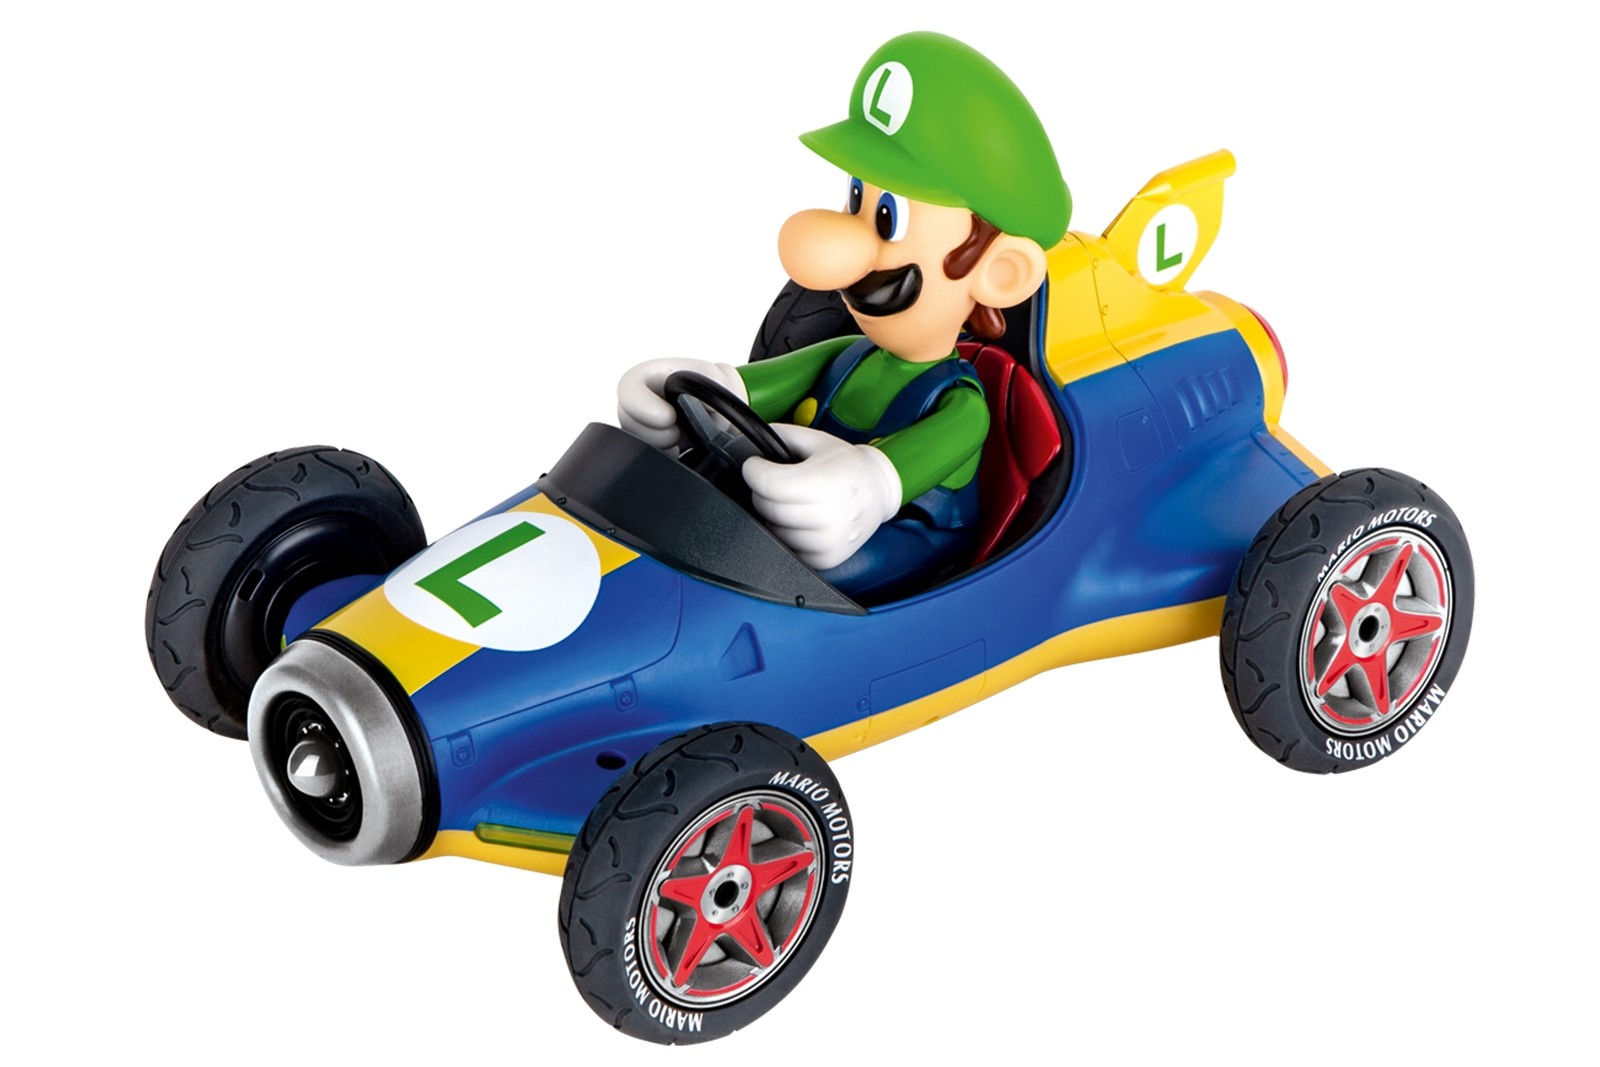 Carrera Mario Kart Mach 8 - Luigi Motore elettrico 1:18 Buggy